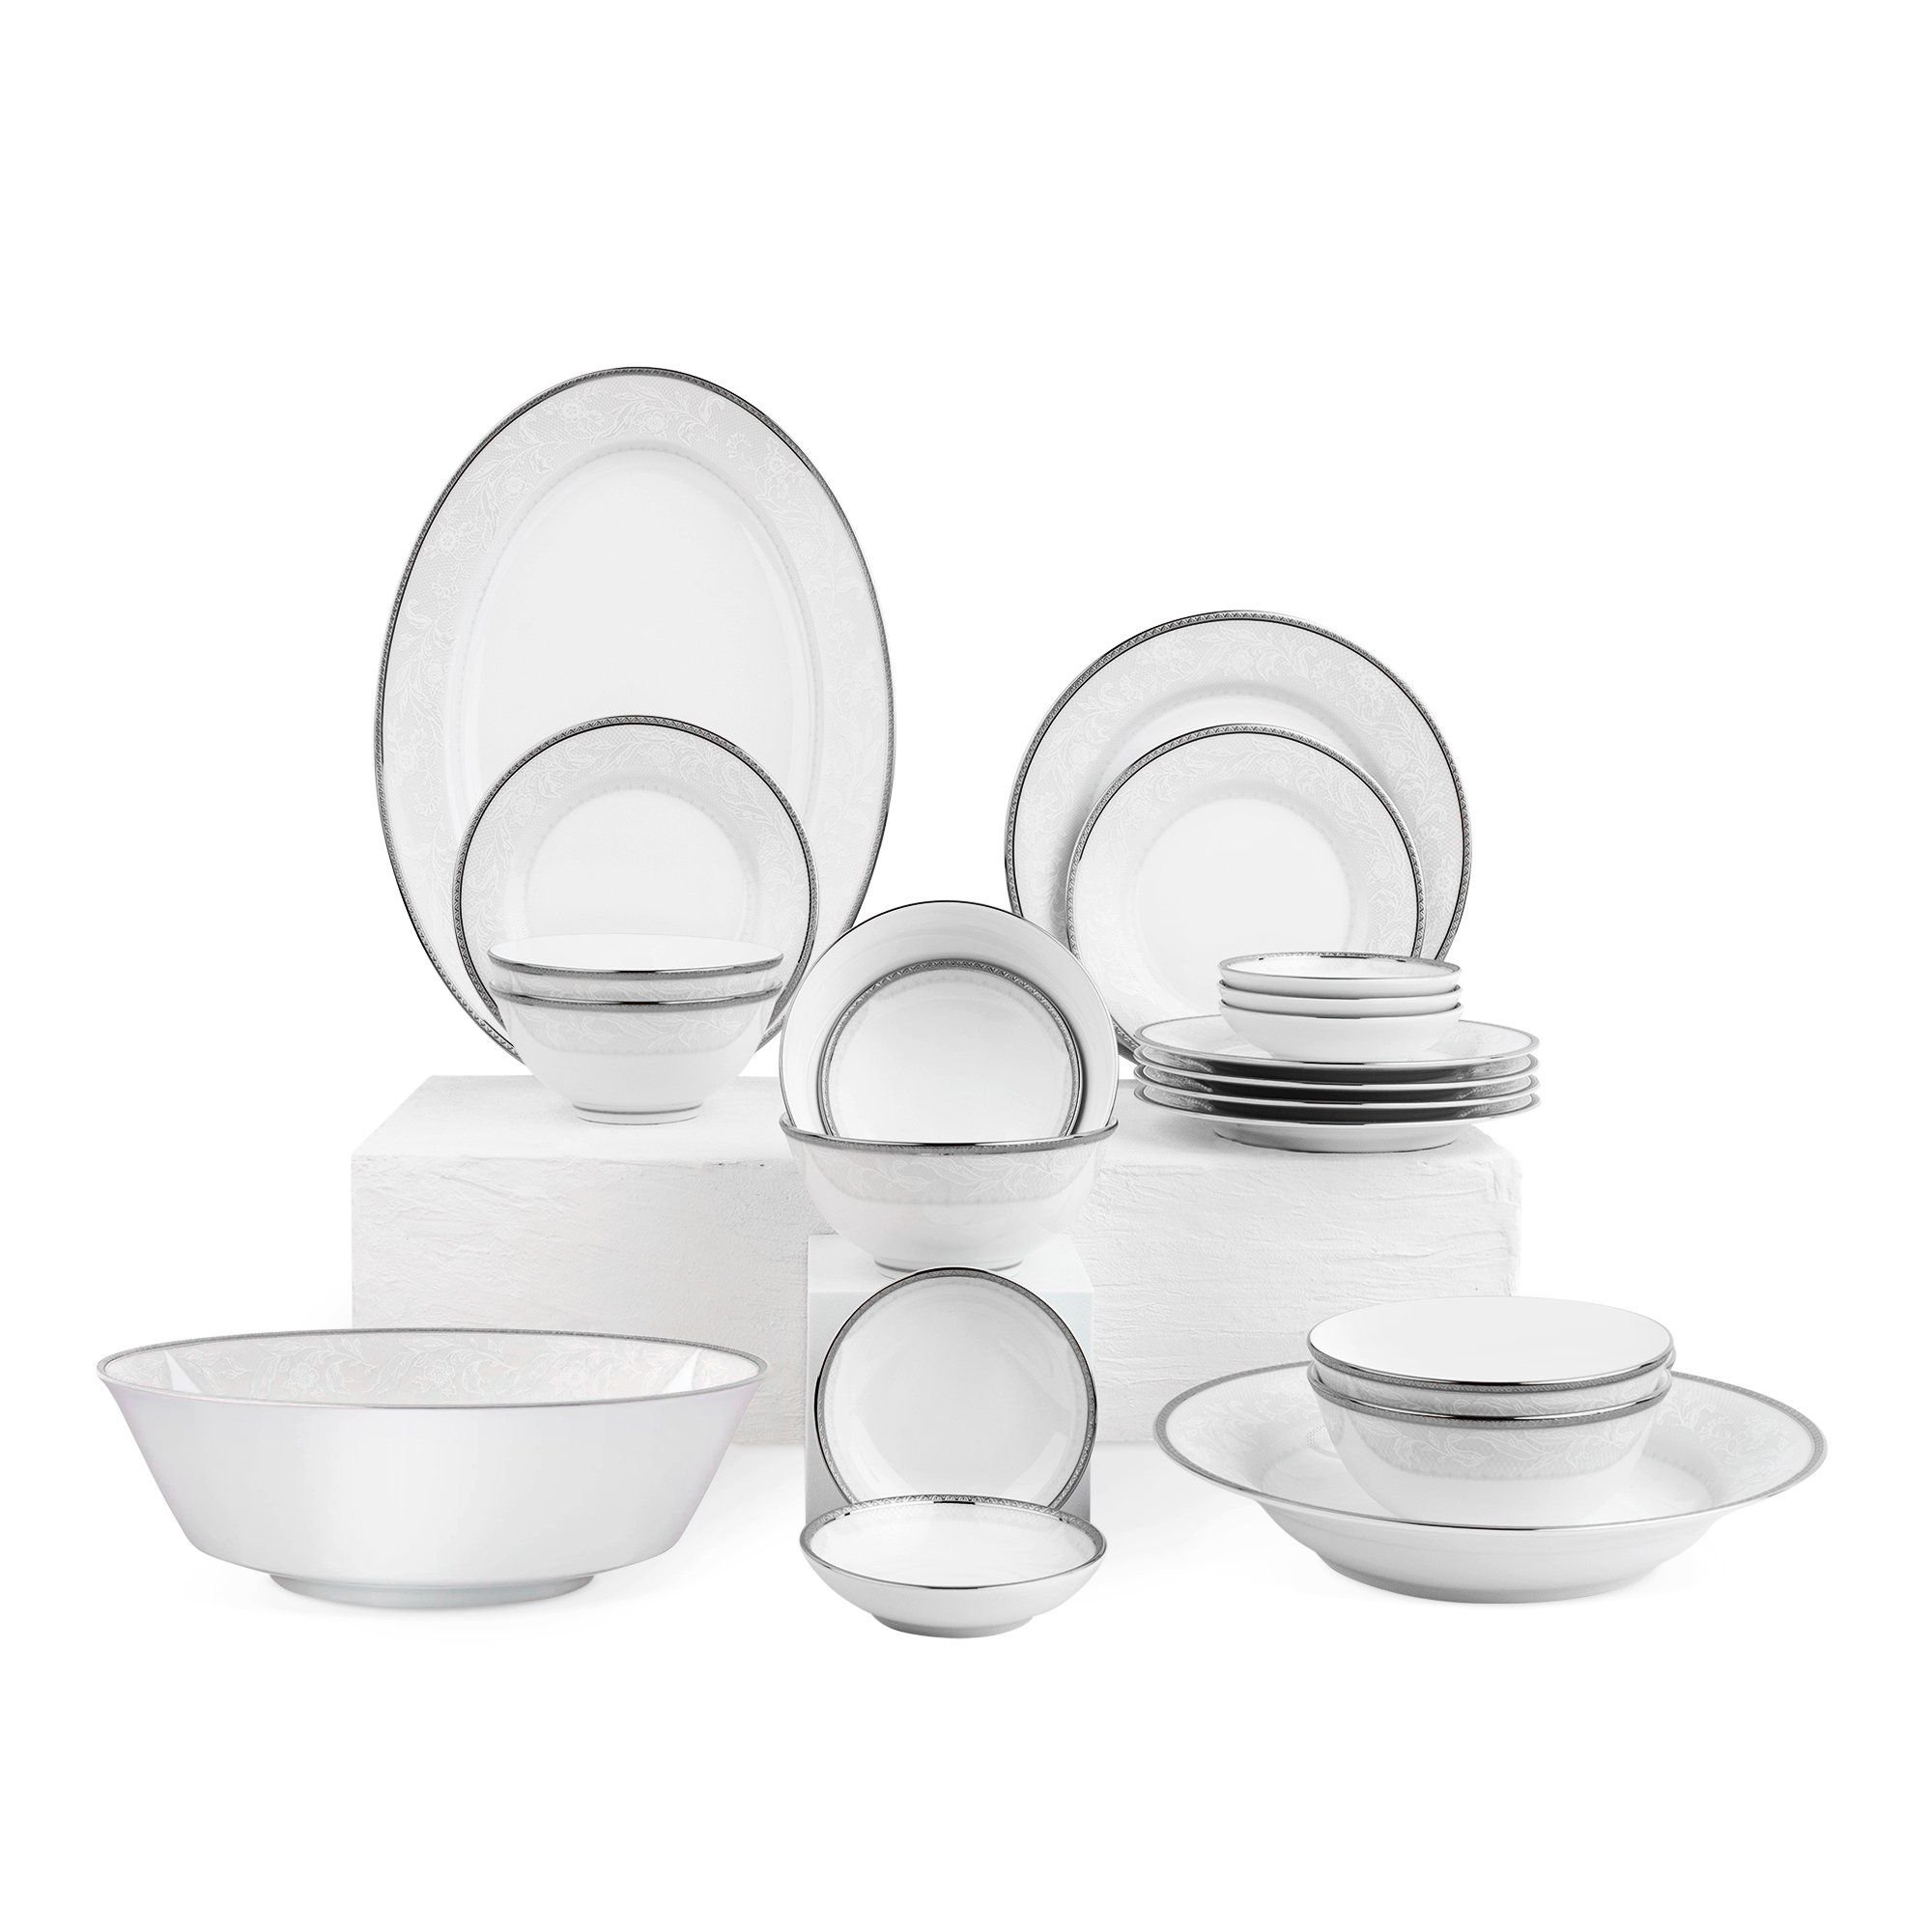  Bộ bát đĩa ăn Châu Á cơ bản 22 món sứ trắng | Flanders Platinum 1715L - D022AB 